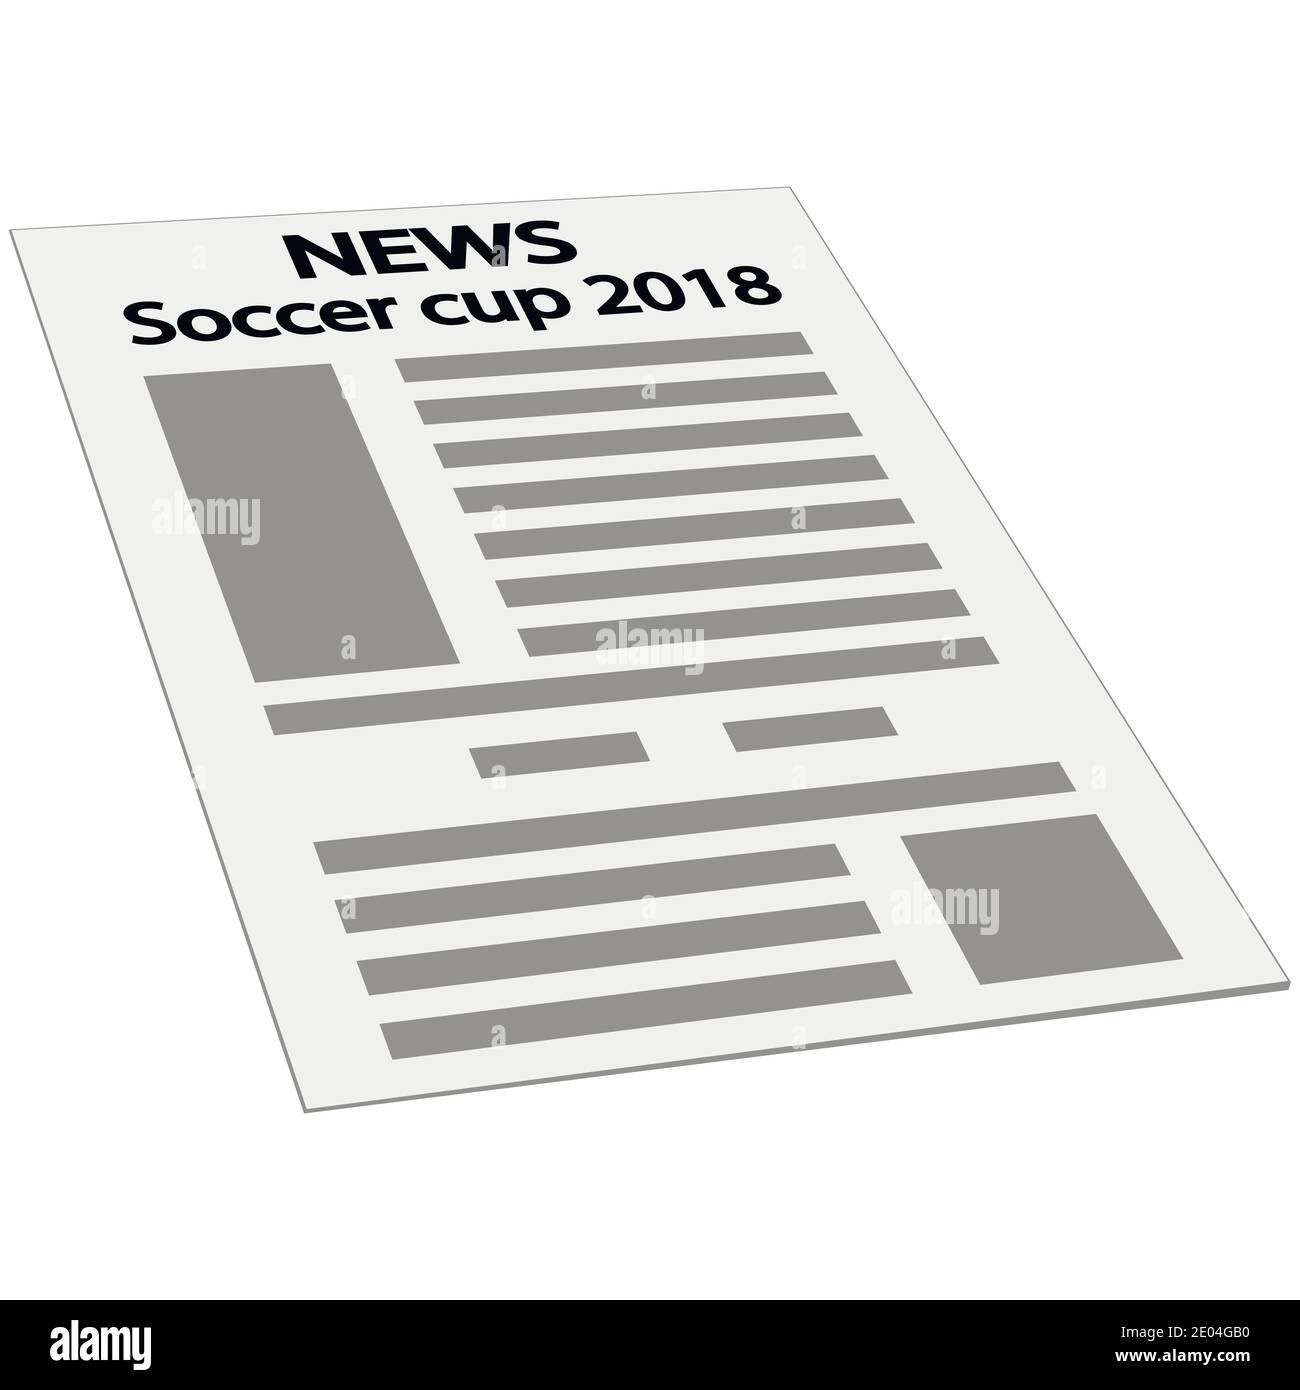 Zeitung News Deckblatt Symbol, Mockup Vorlage erste Seite Nachrichten, Isometrie Perspektive Fußball Cup 2018 internationale Weltmeisterschaft Turnier Stock Vektor